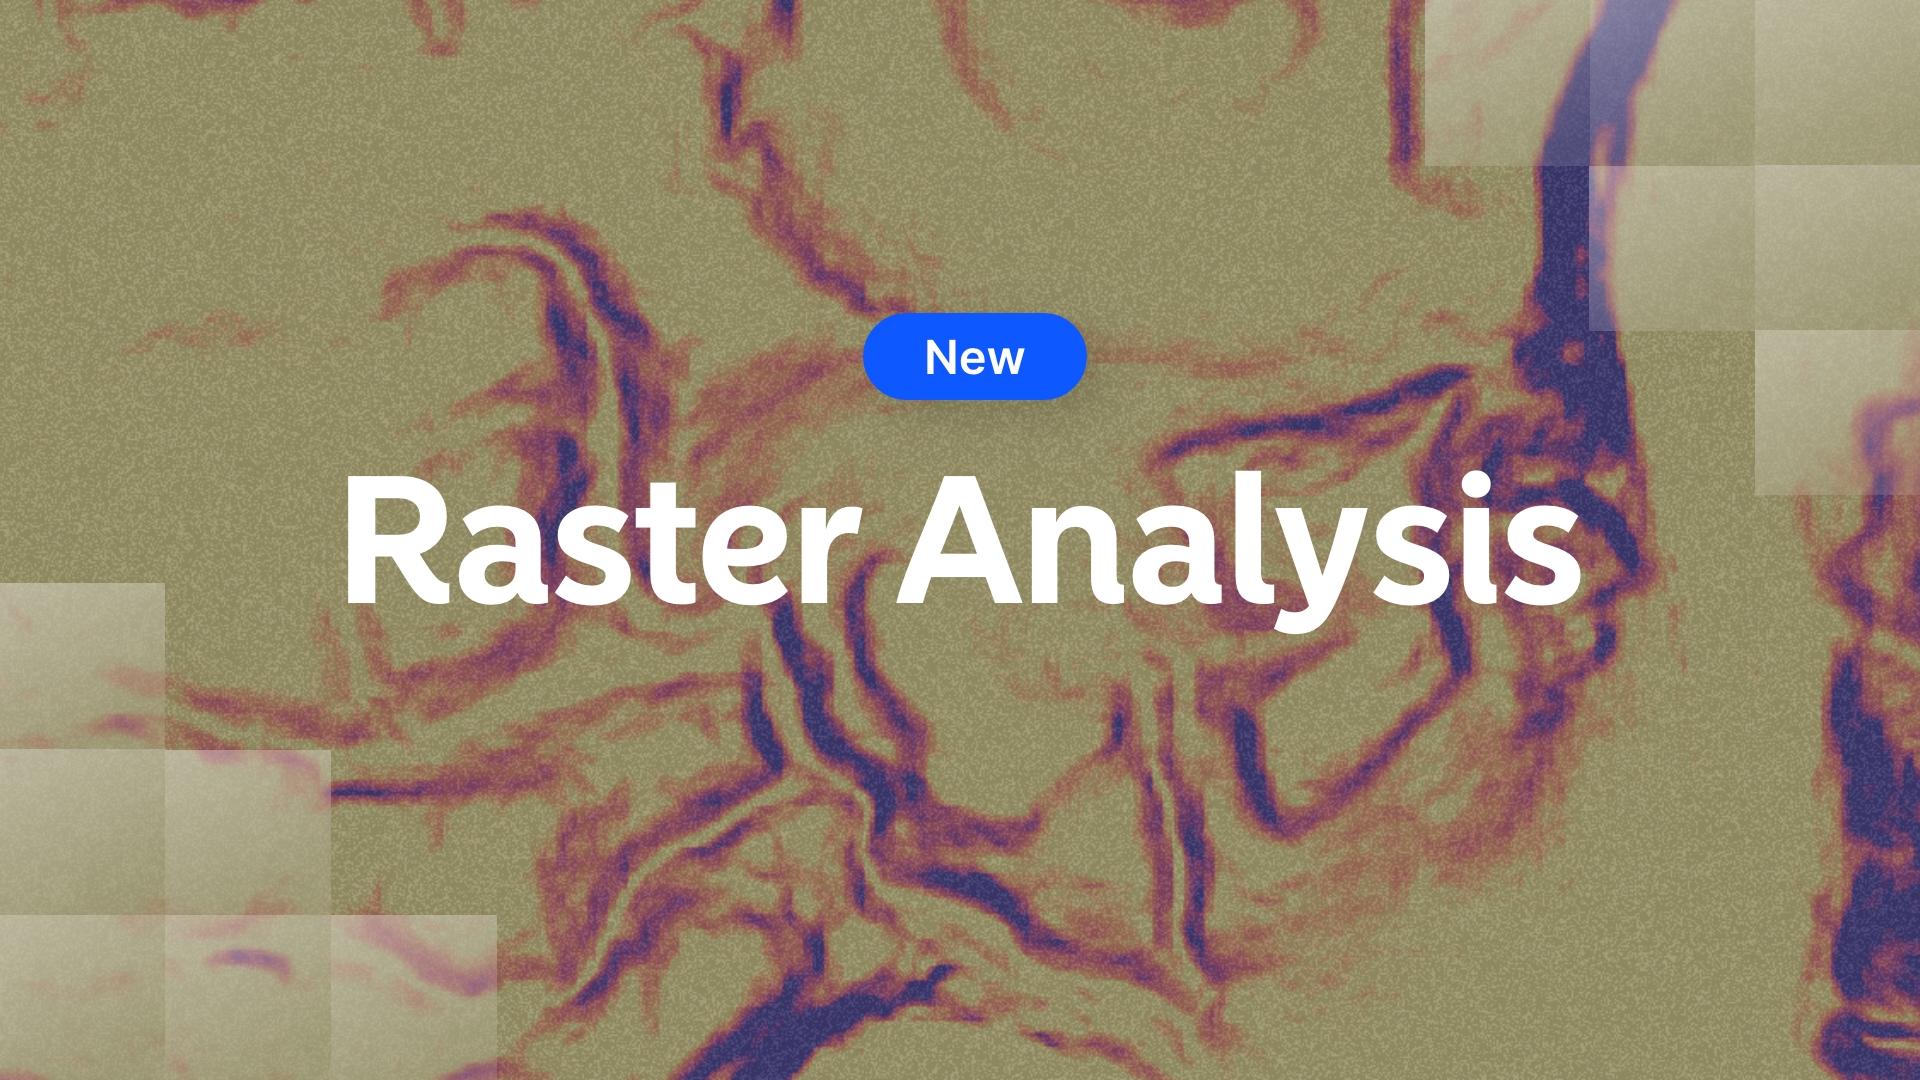 Introducing Raster Analysis